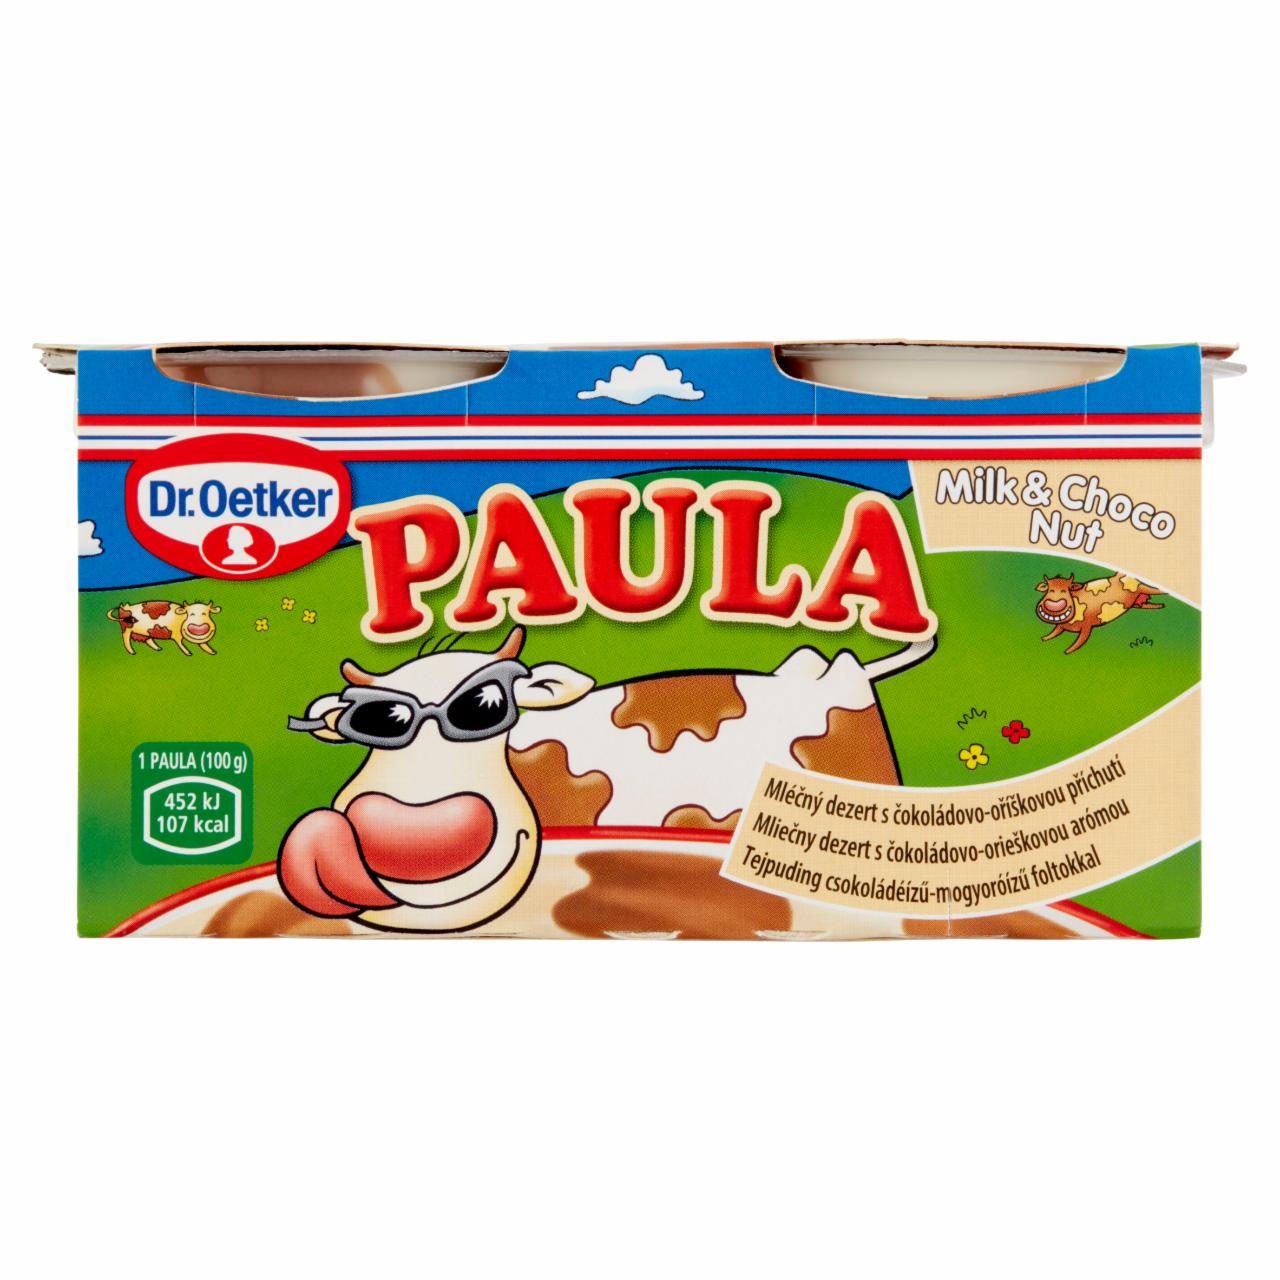 Képek - Dr. Oetker Paula tejpuding csokoládéízű-mogyoróízű foltokkal 2 x 100 g (200 g)